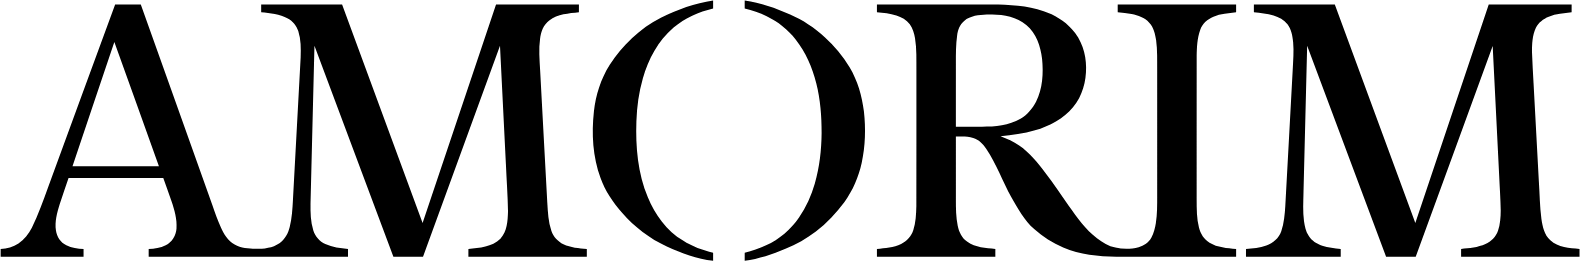 Corticeira Amorim logo large (transparent PNG)